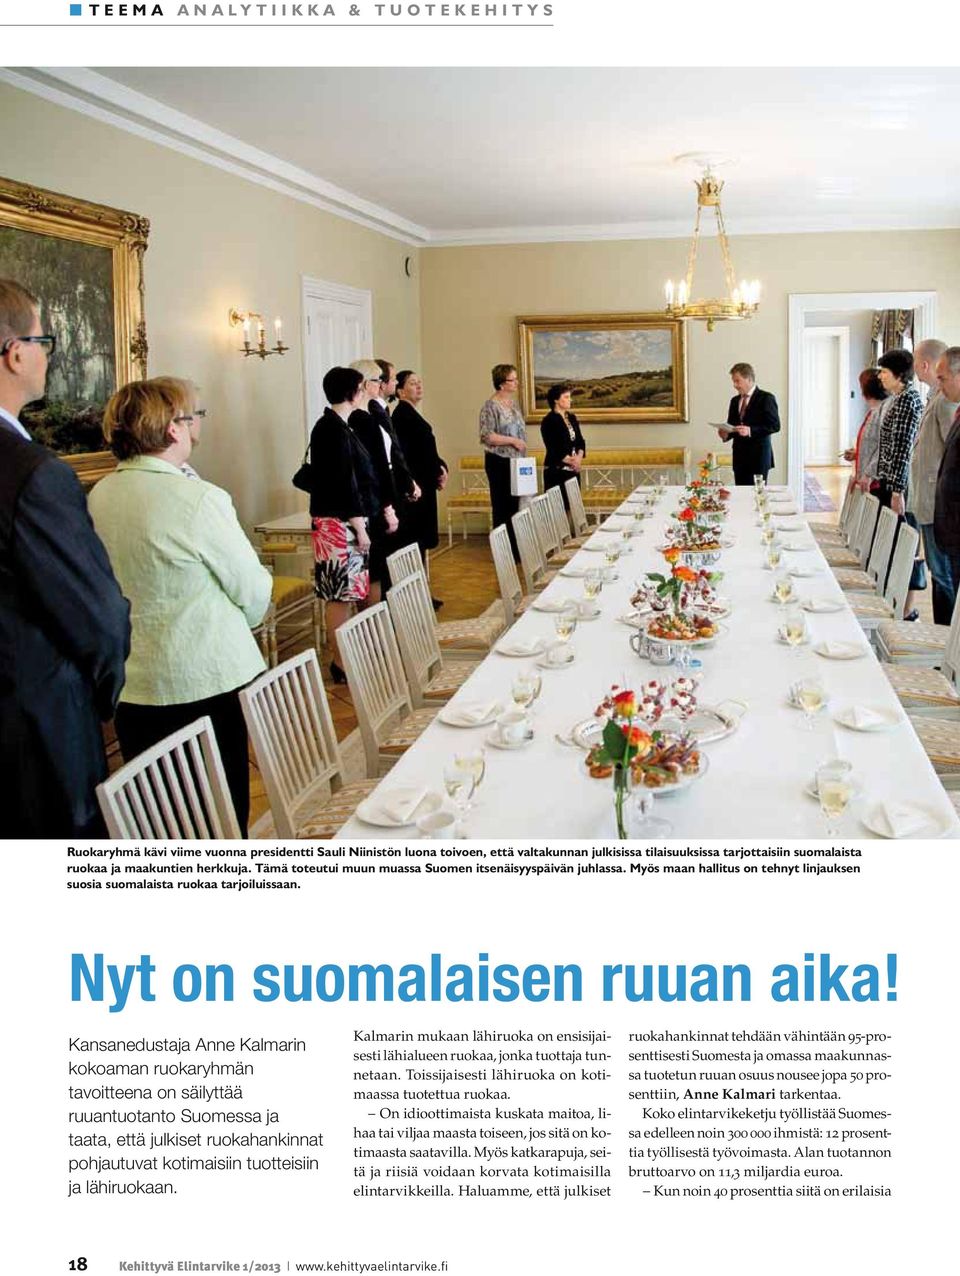 Kansanedustaja Anne Kalmarin kokoaman ruokaryhmän tavoitteena on säilyttää ruuantuotanto Suomessa ja taata, että julkiset ruokahankinnat pohjautuvat kotimaisiin tuotteisiin ja lähiruokaan.